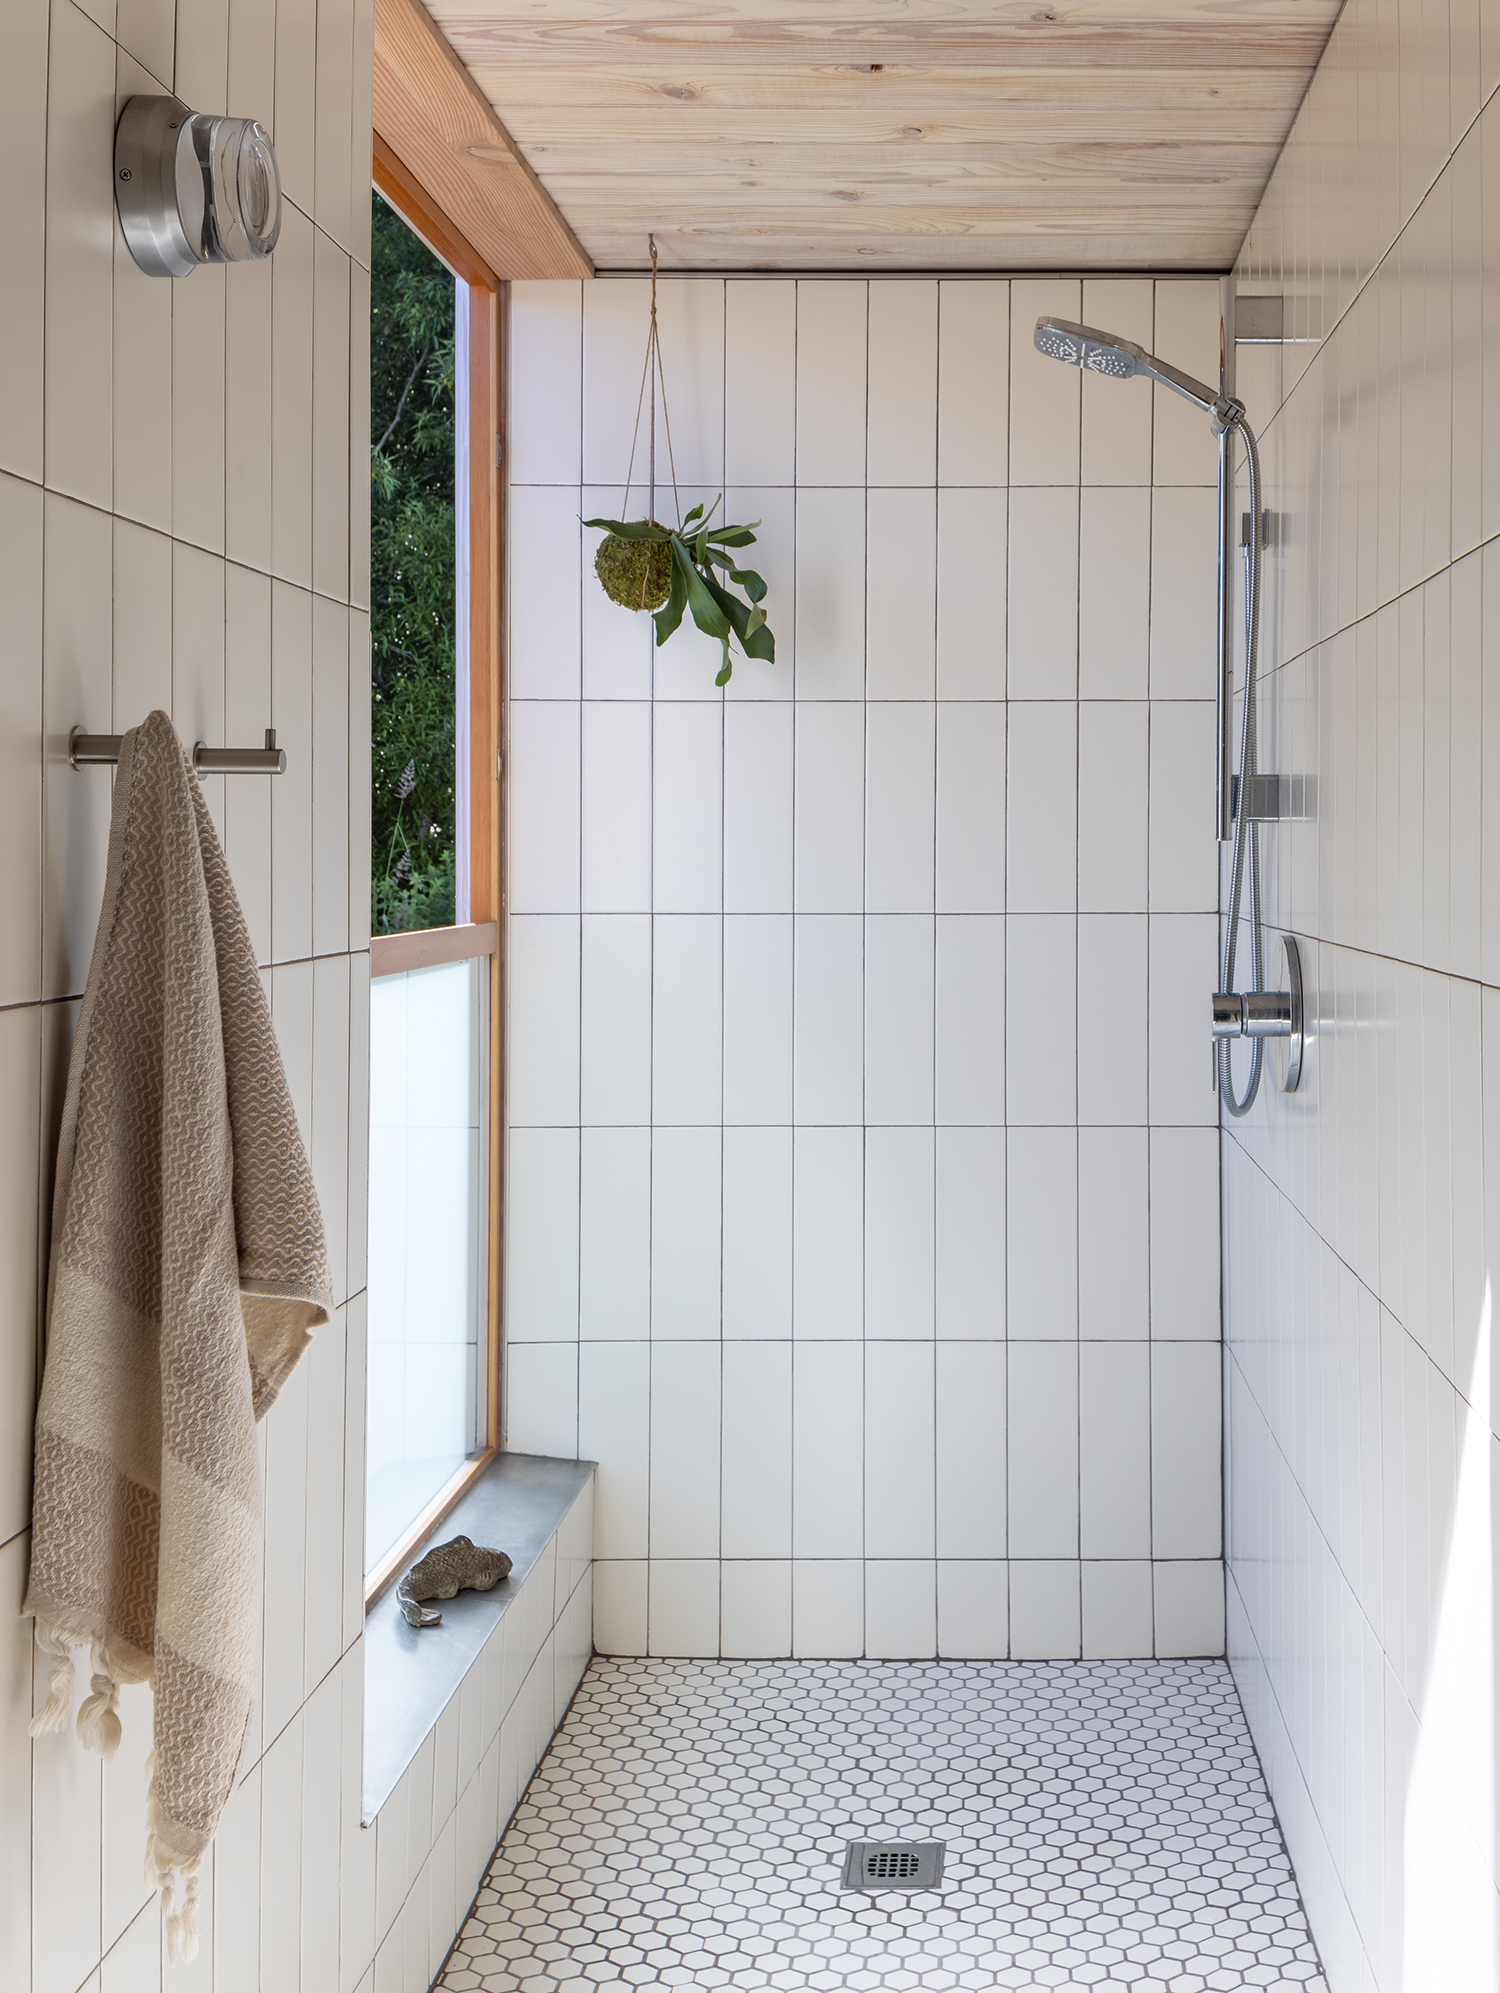 Bathroom in San Juan Islands A-Frame by Heliotrope/Joe Herrin